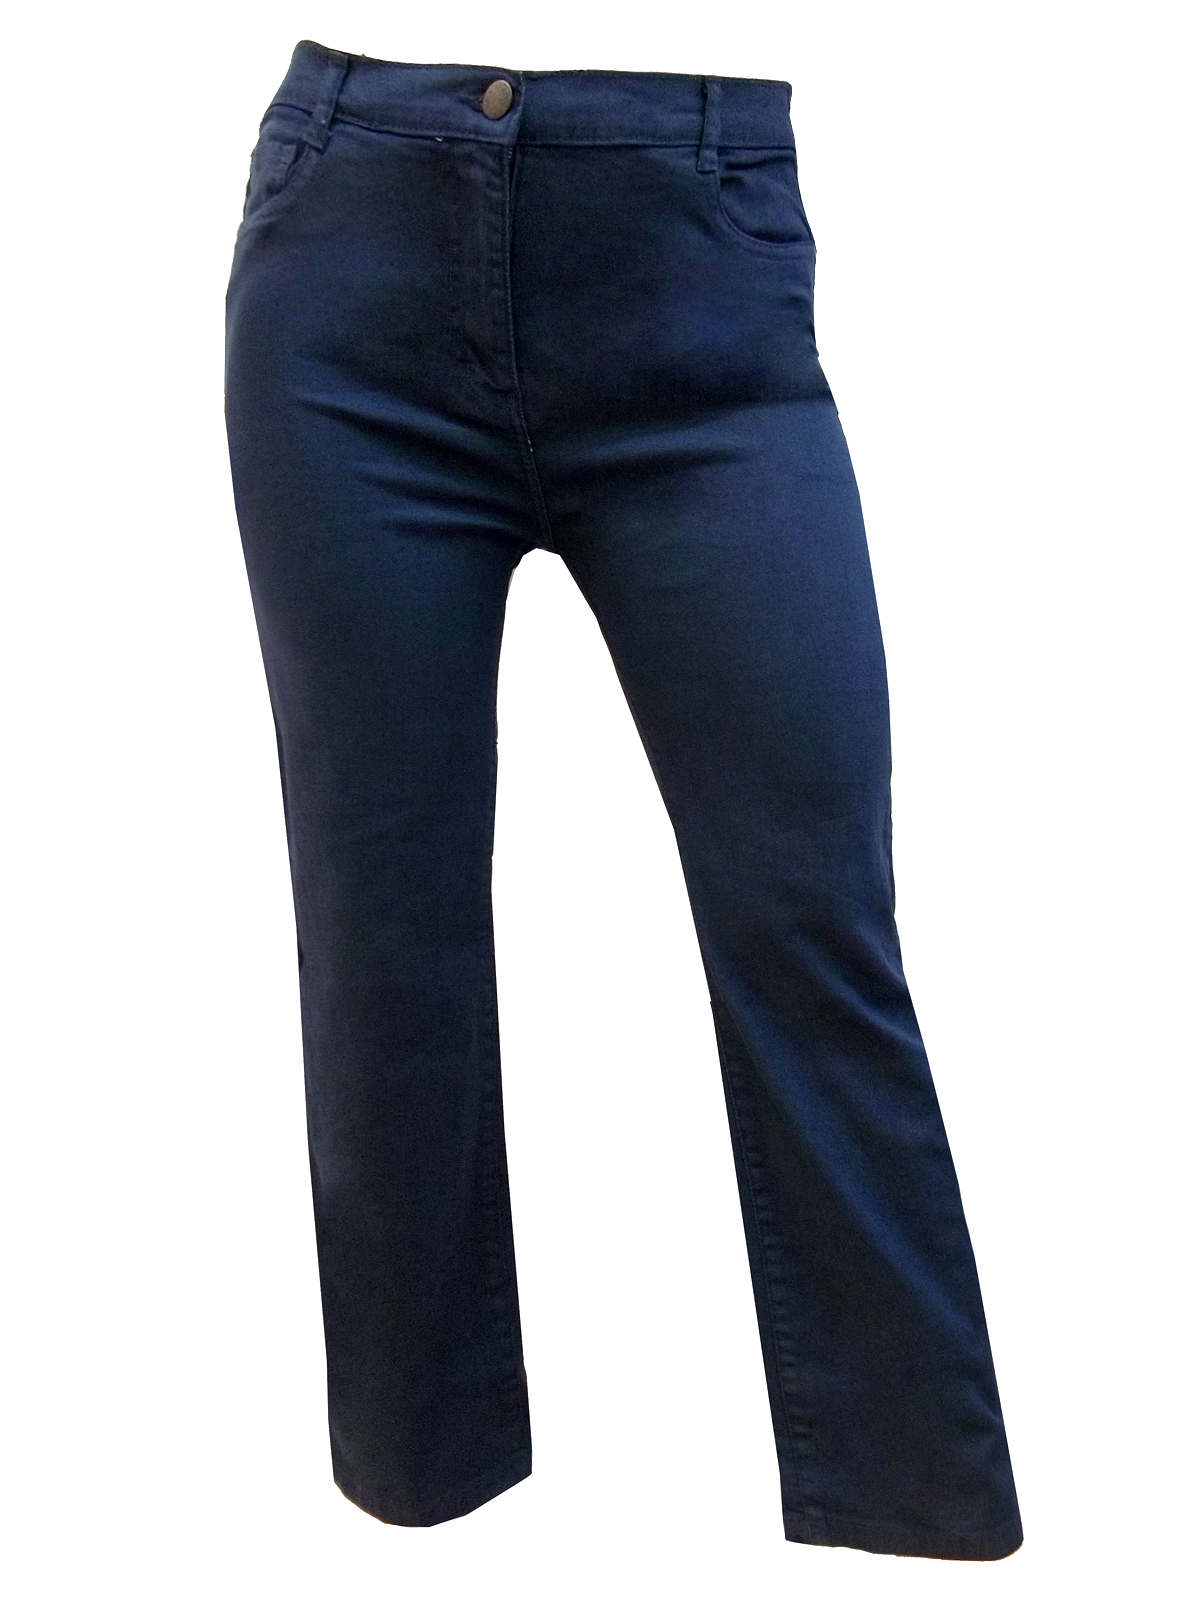 DARK-TEAL Cotton Rich Straight Leg Denim Jeans - Size 10 to 20